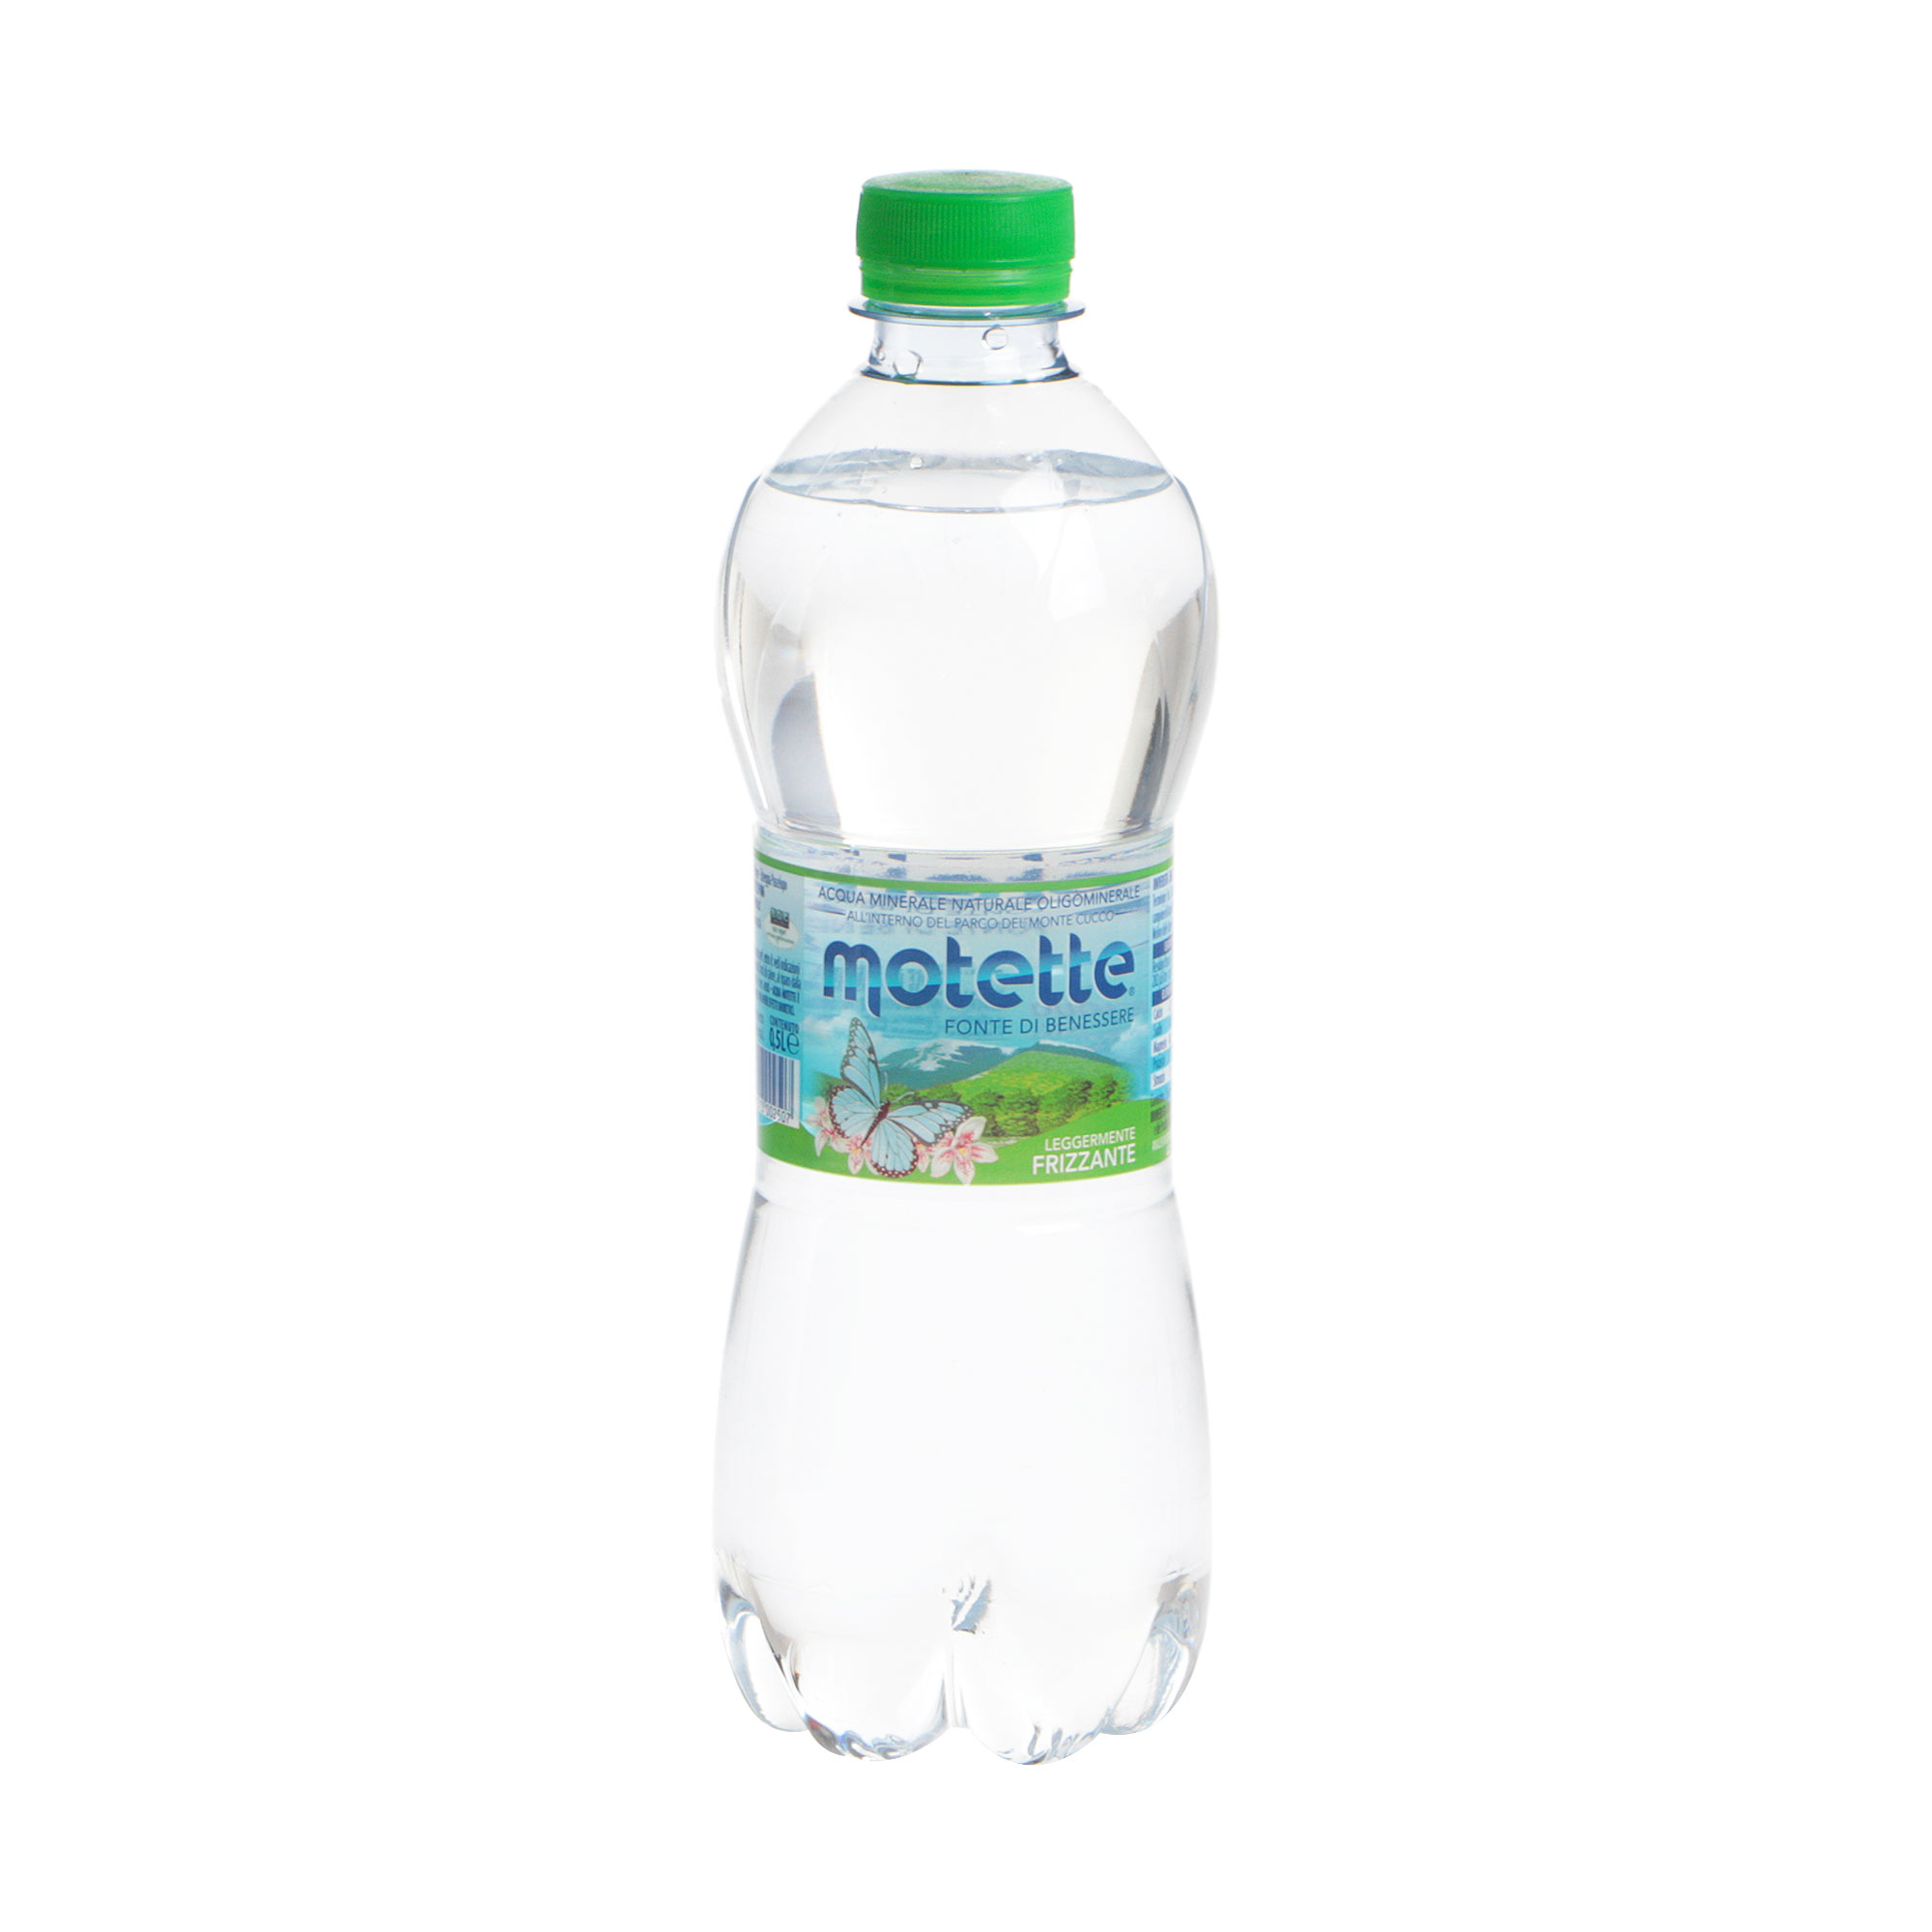 Вода Motette слабогазированная, 0,5 л